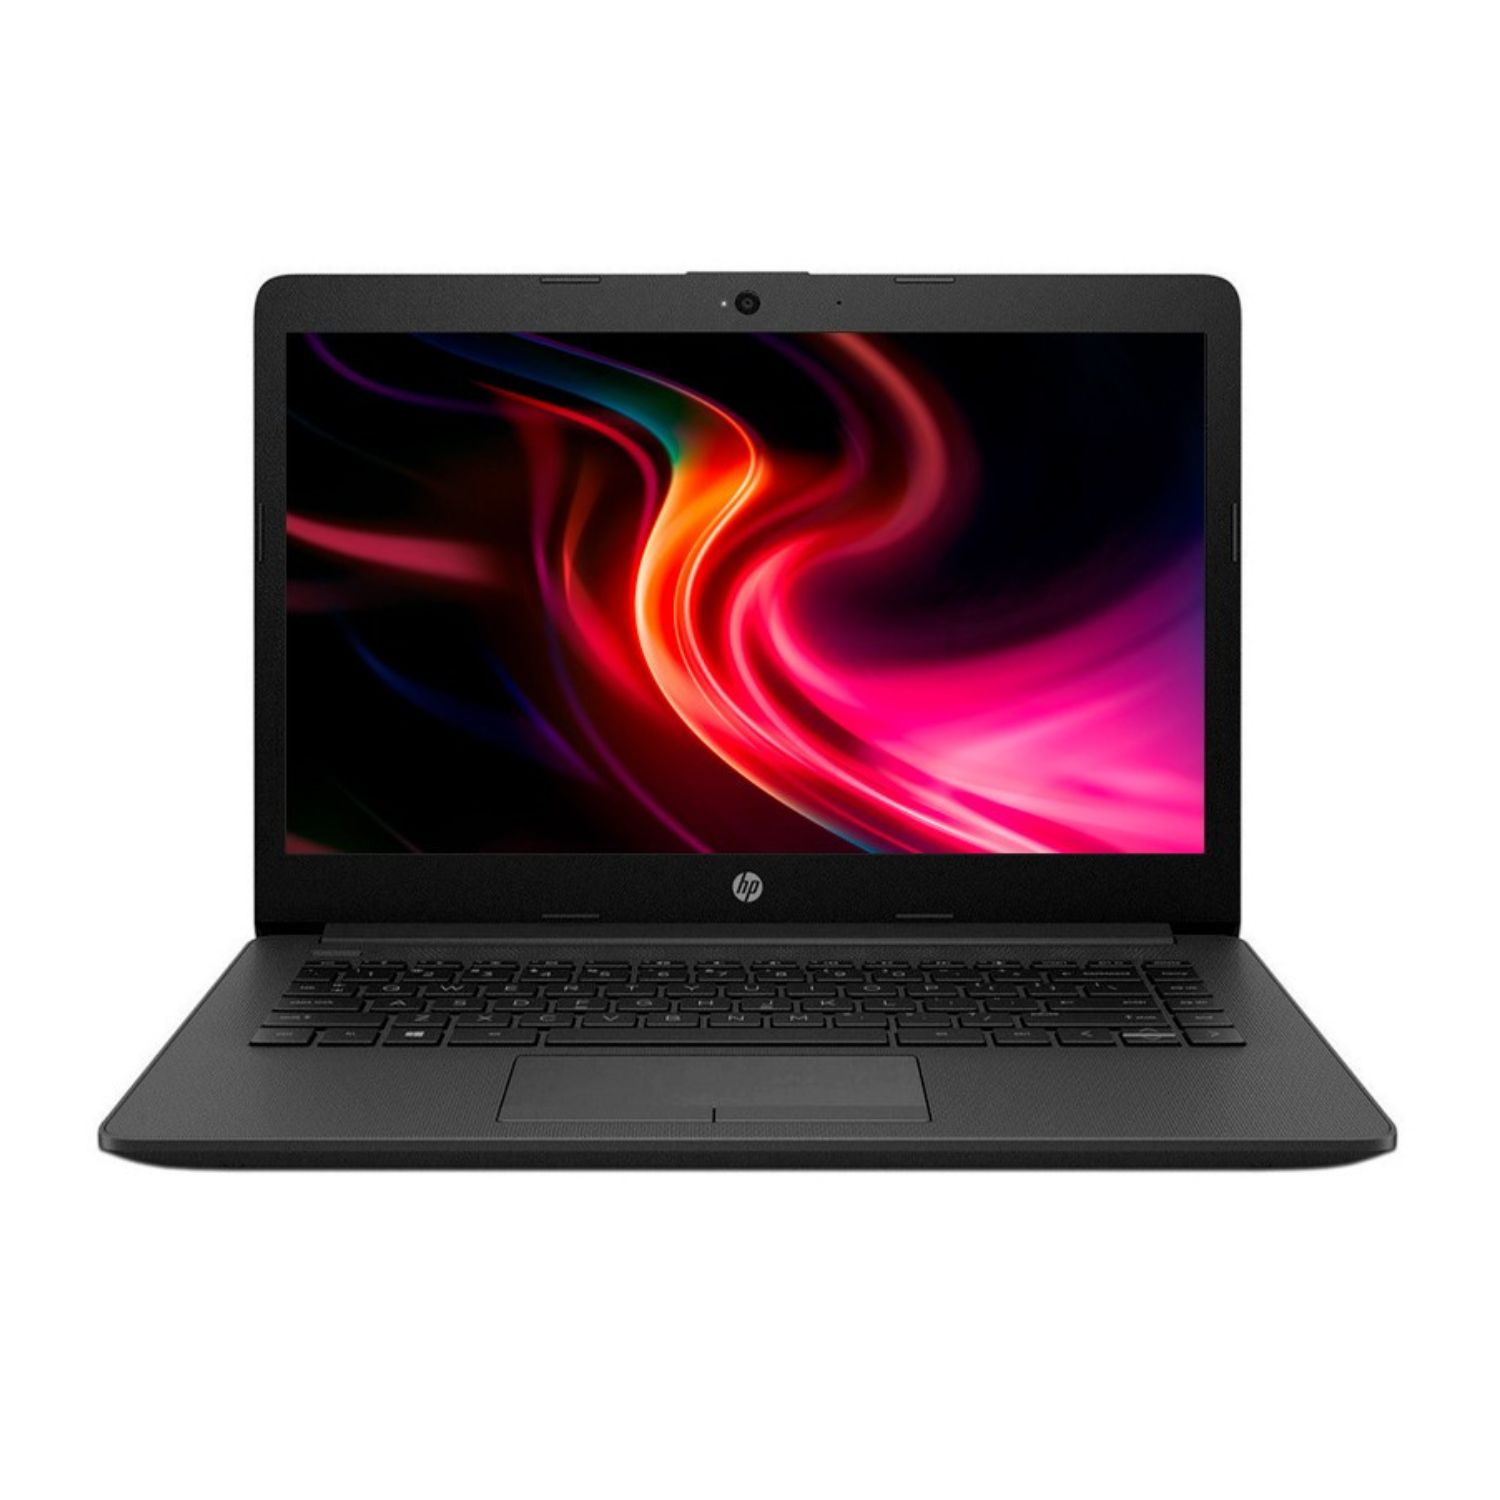 Laptop Hp 240 G7 14" Hd,Celeron N4100, 4gb Ddr4, 1tb Sata